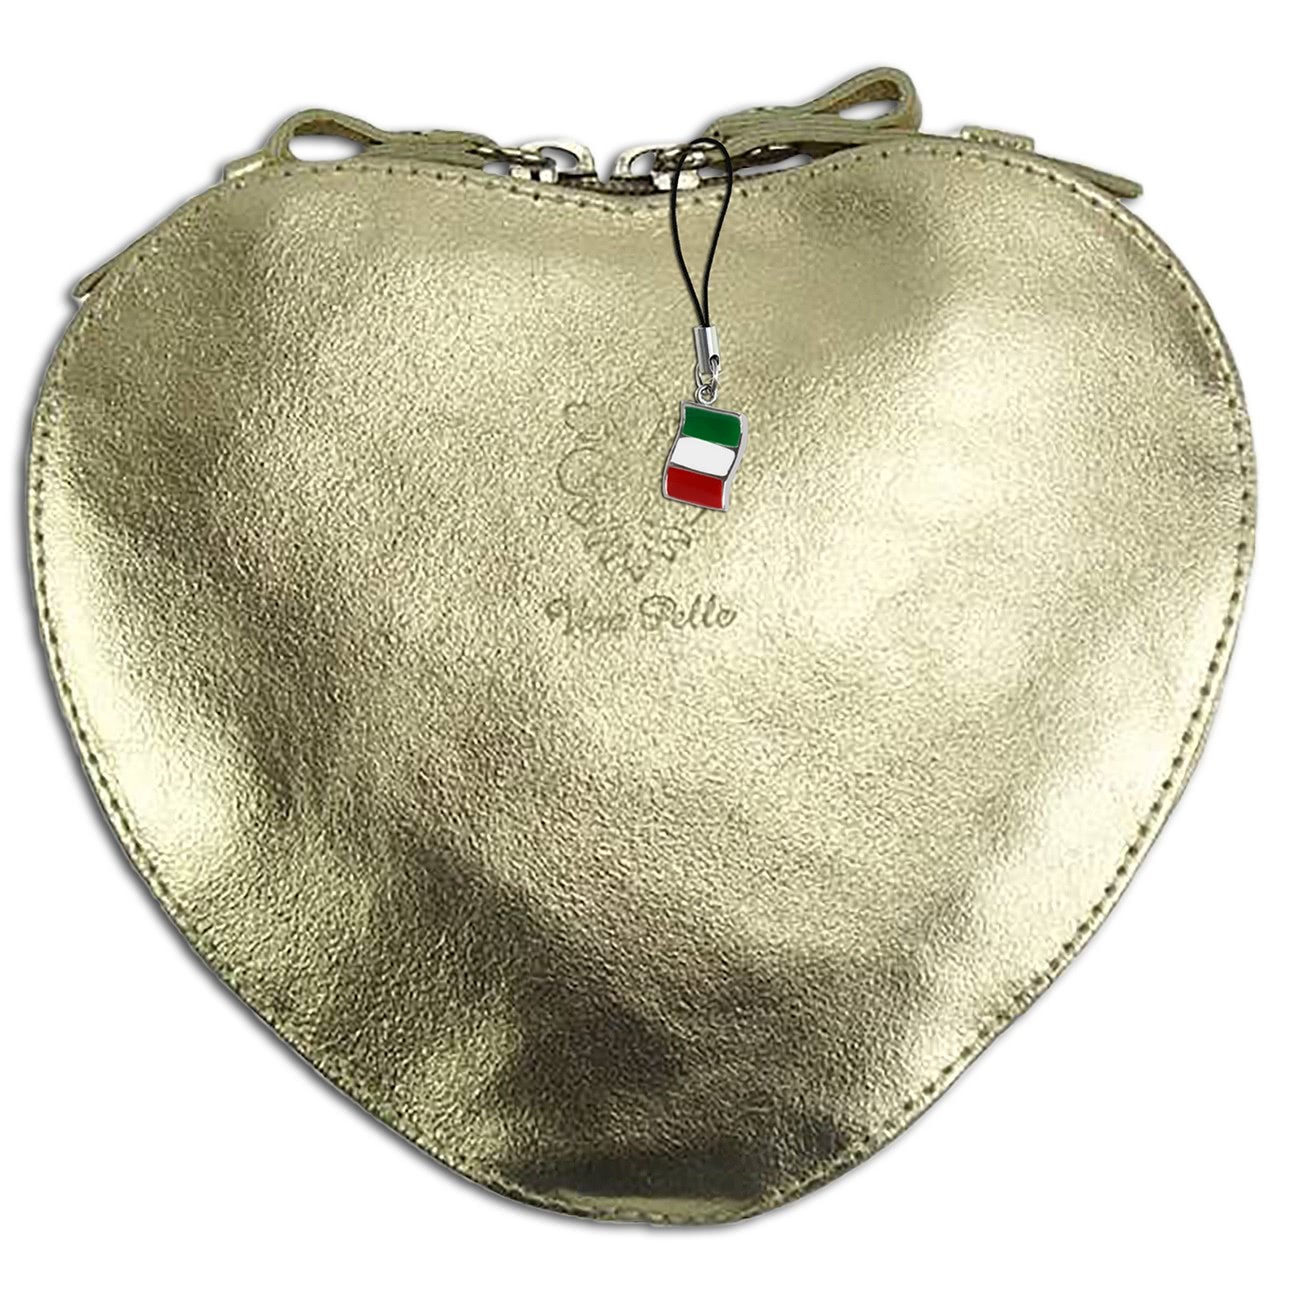 Florence herzförmige Damen Schultertasche echtes Leder Handtasche gold OTF121Y